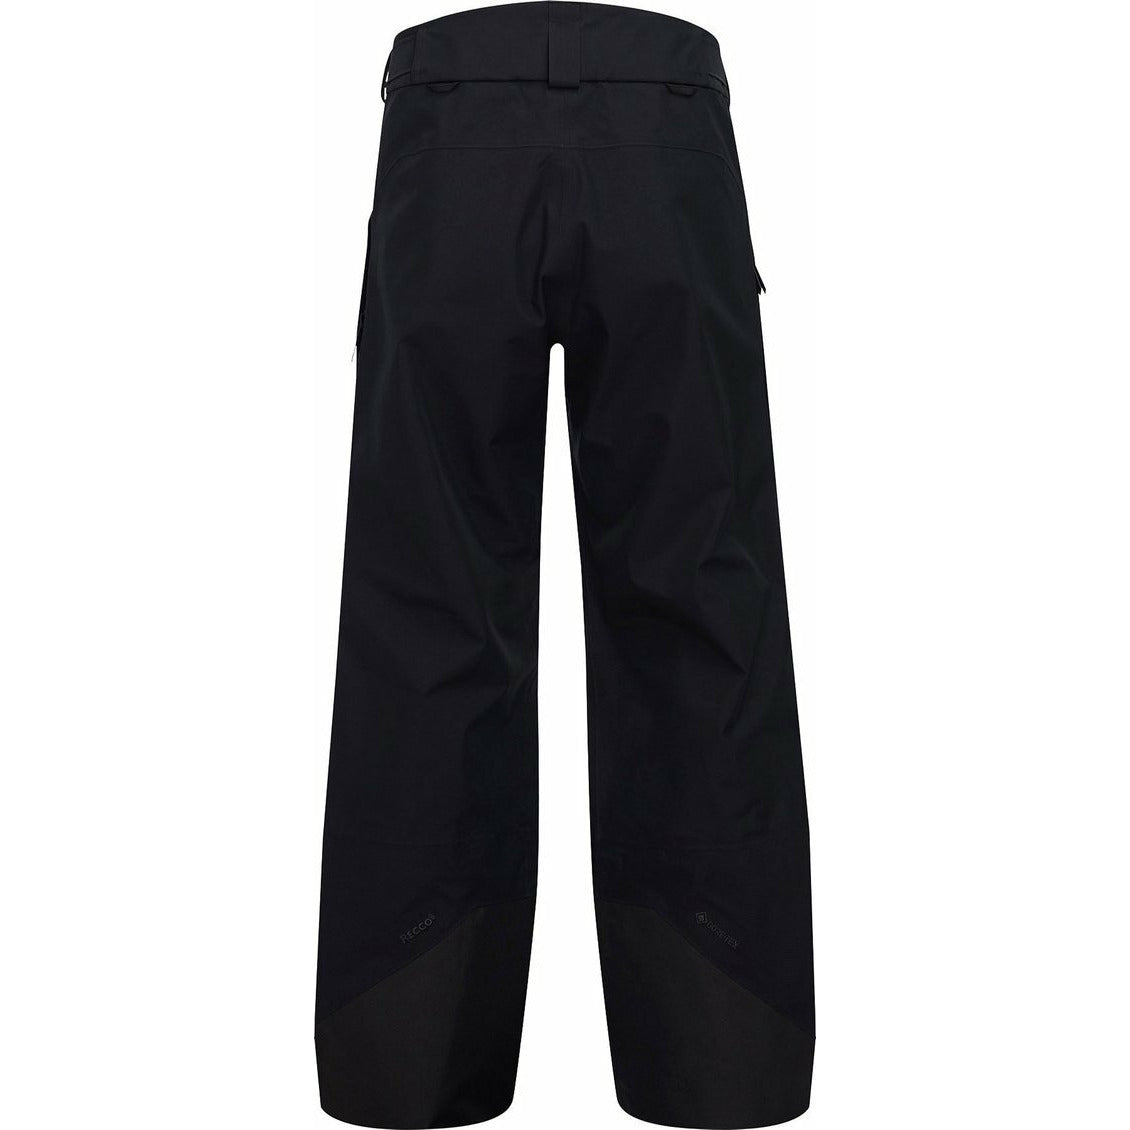 Pantalons de Ski Vertical 3L Noir pour Hommes||Vertical 3L Ski Pants Black for Men's